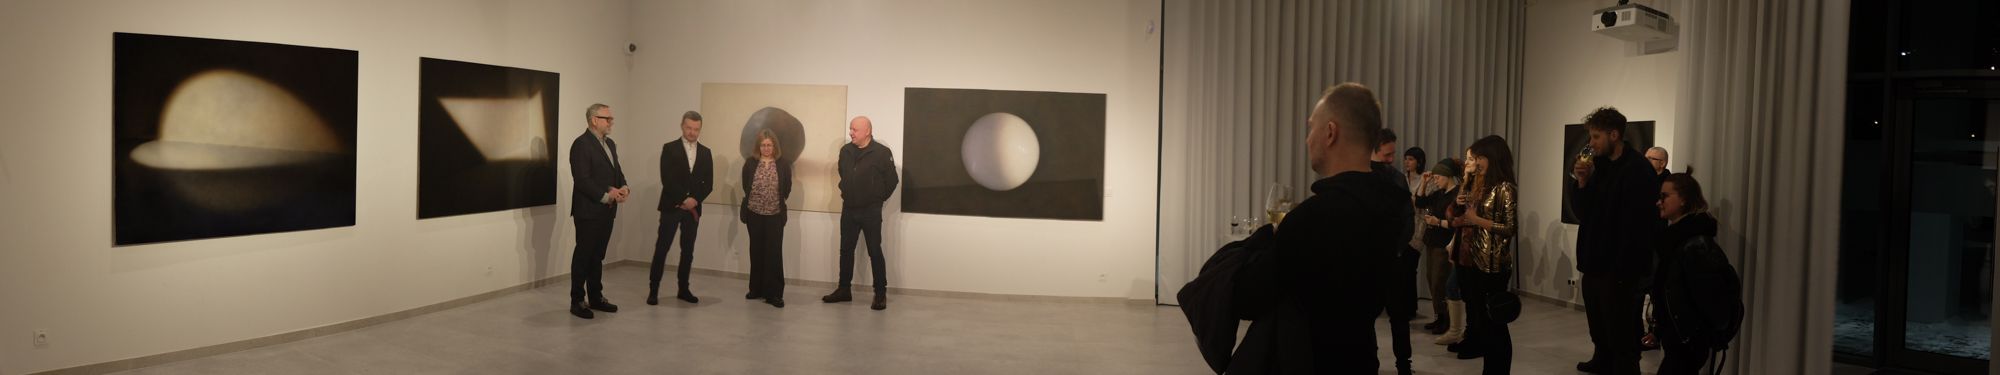 Wojciech Leder BODY OF WORK wystawa malarstwa 